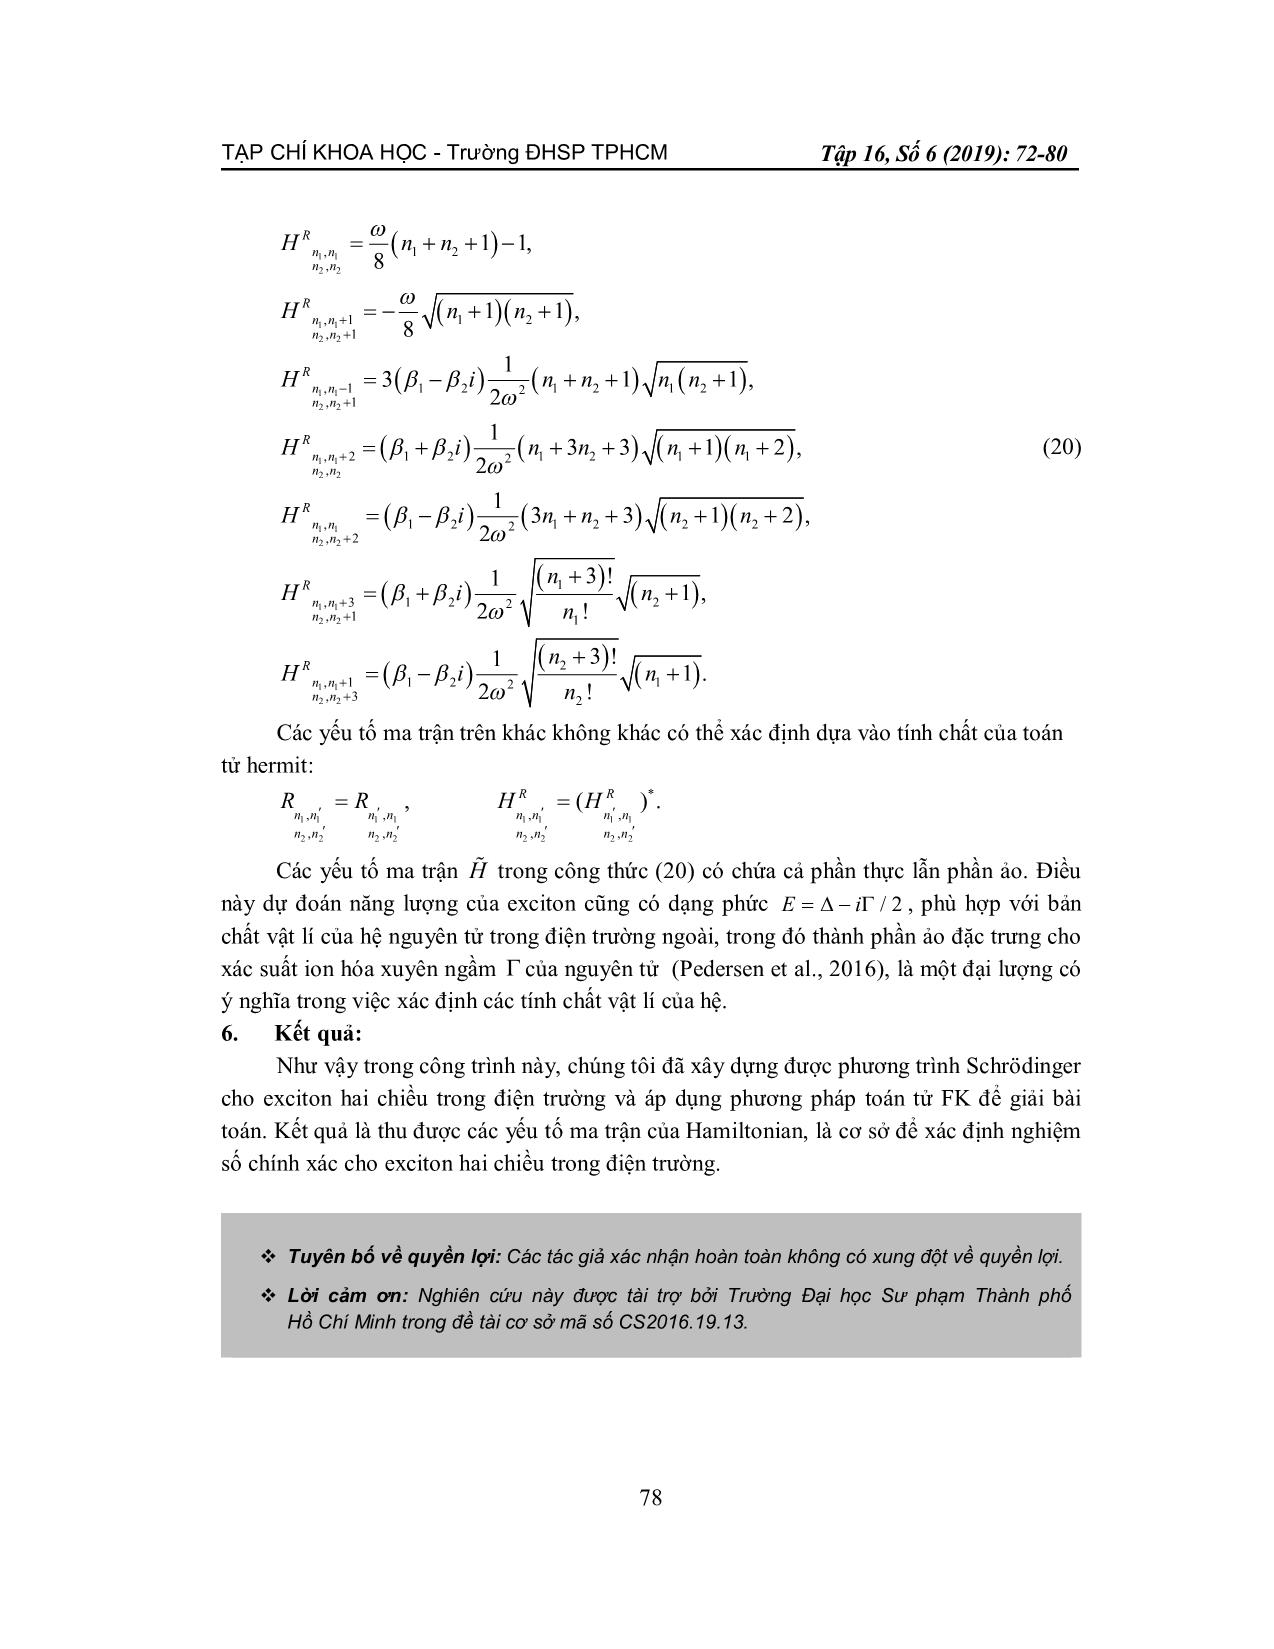 Yếu tố ma trận cho Exciton hai chiều trong điện trường trang 7